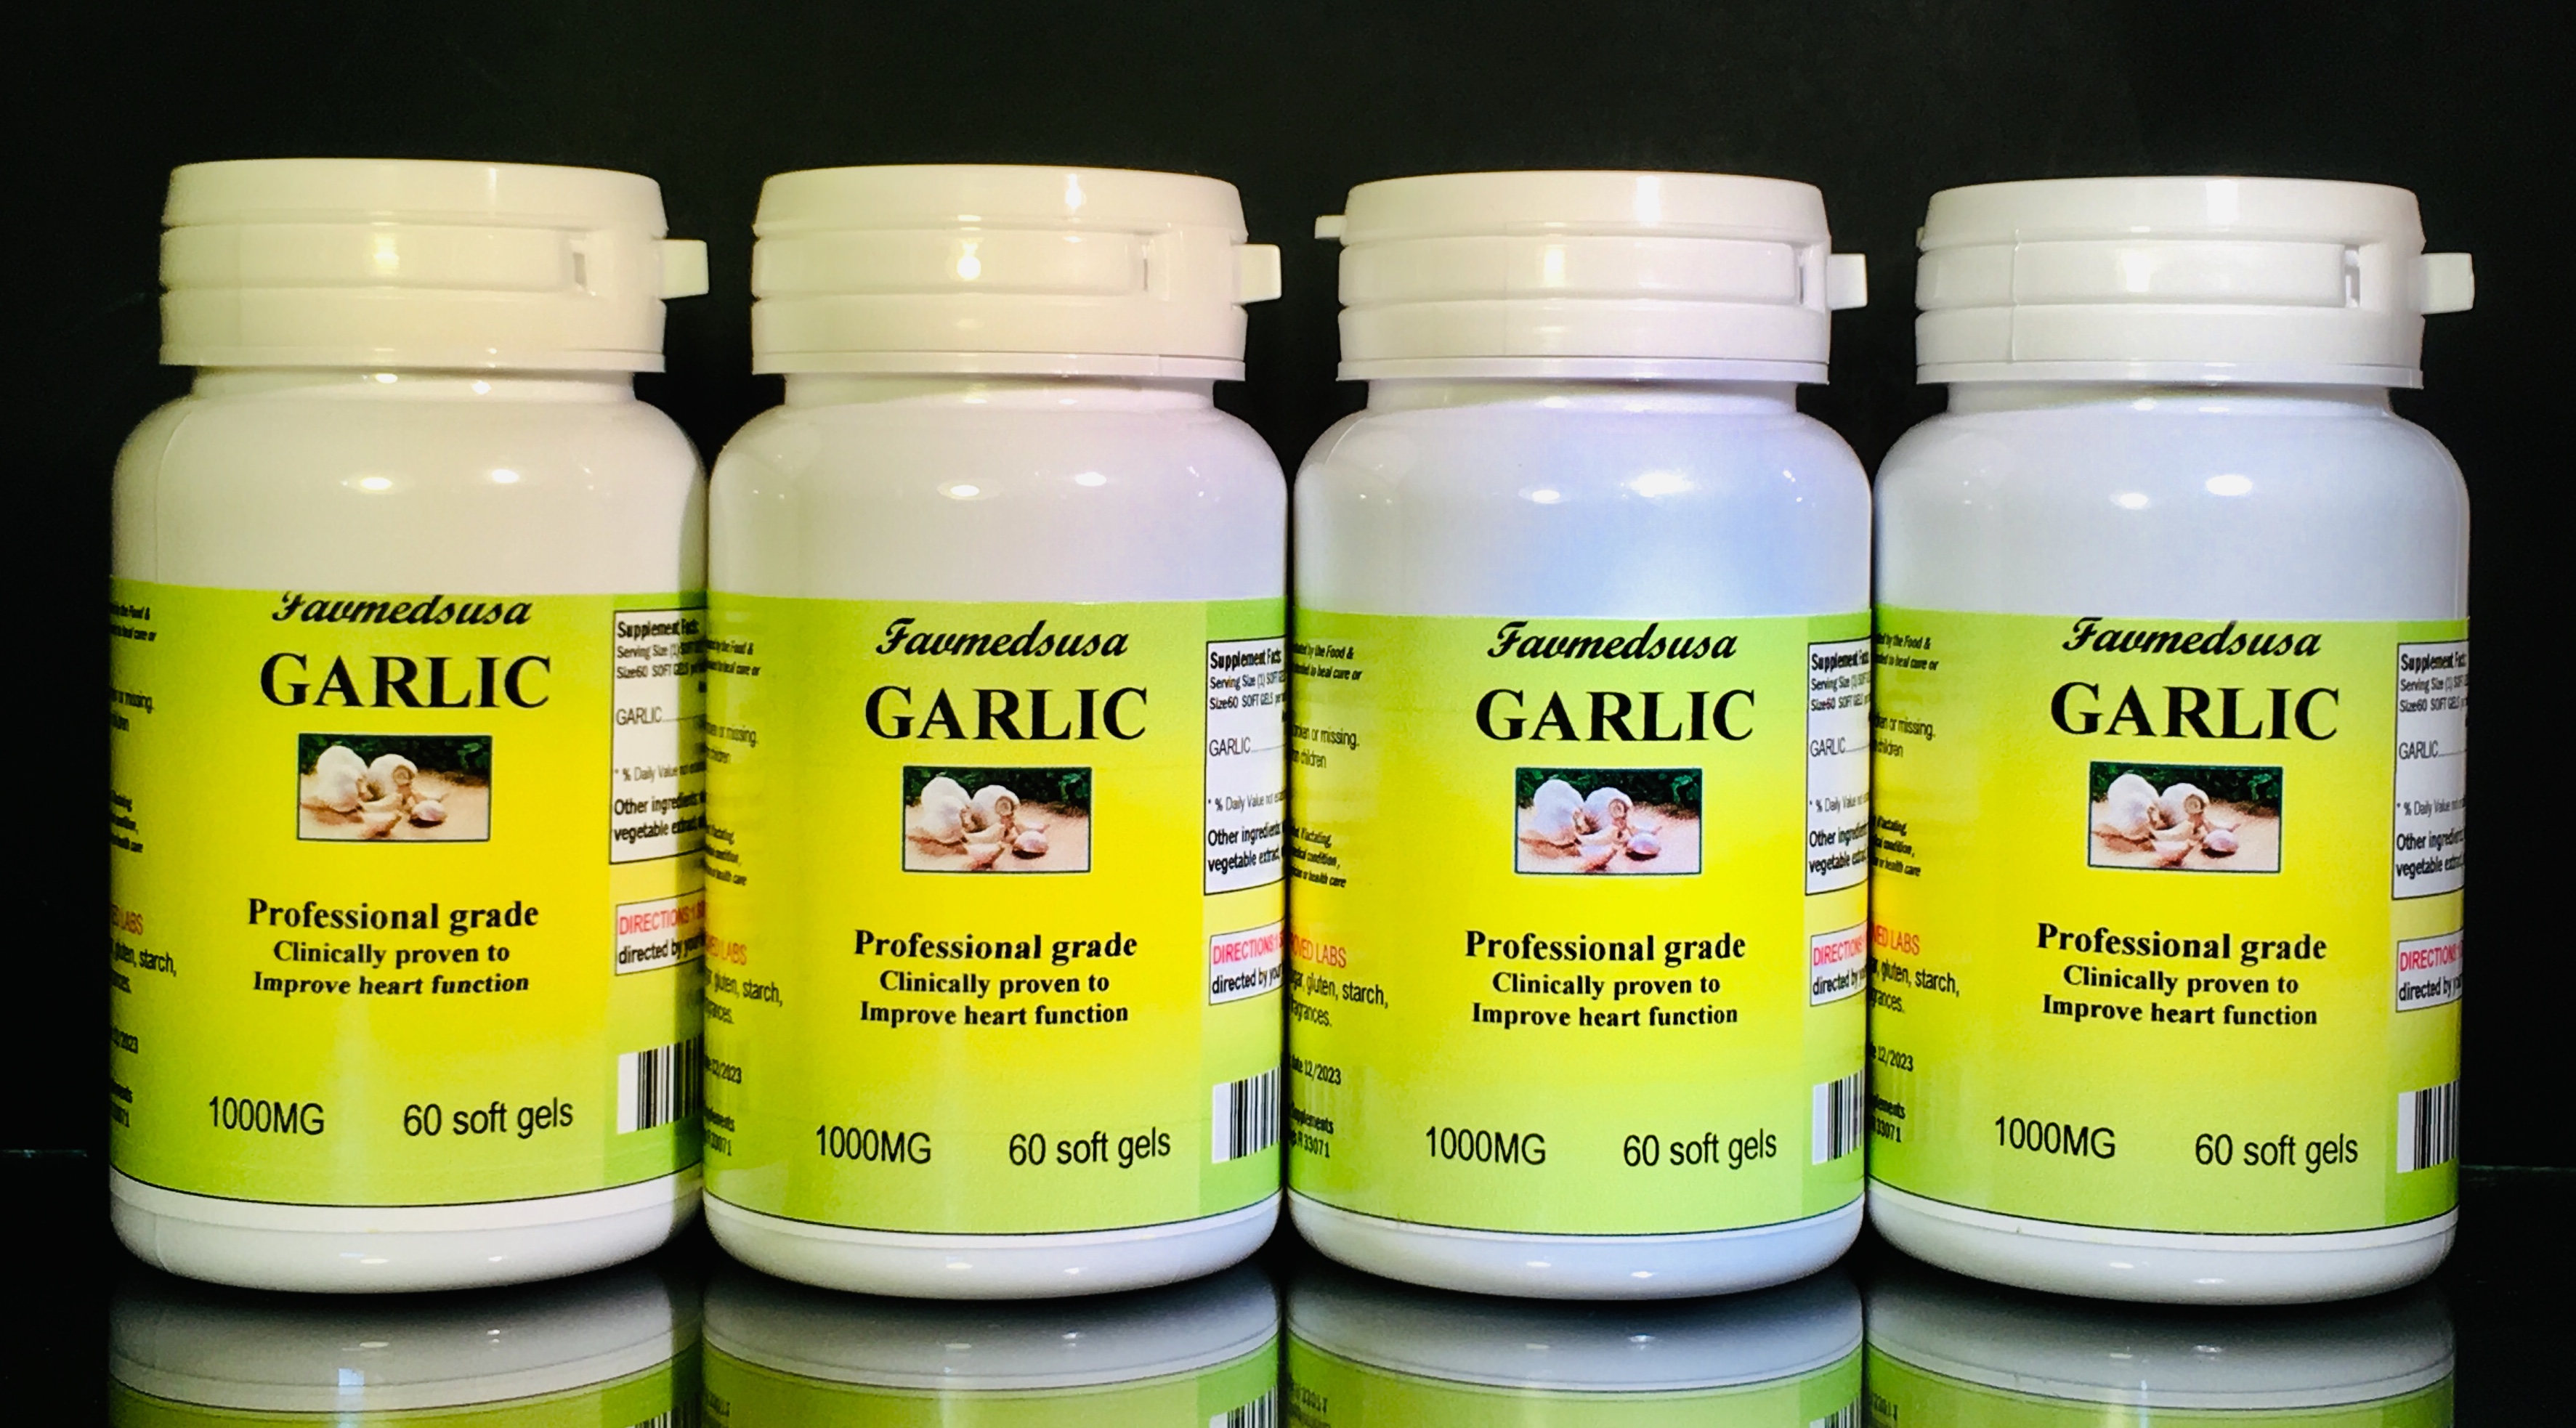 Garlic 1000mg - 240 (4x60) soft gels